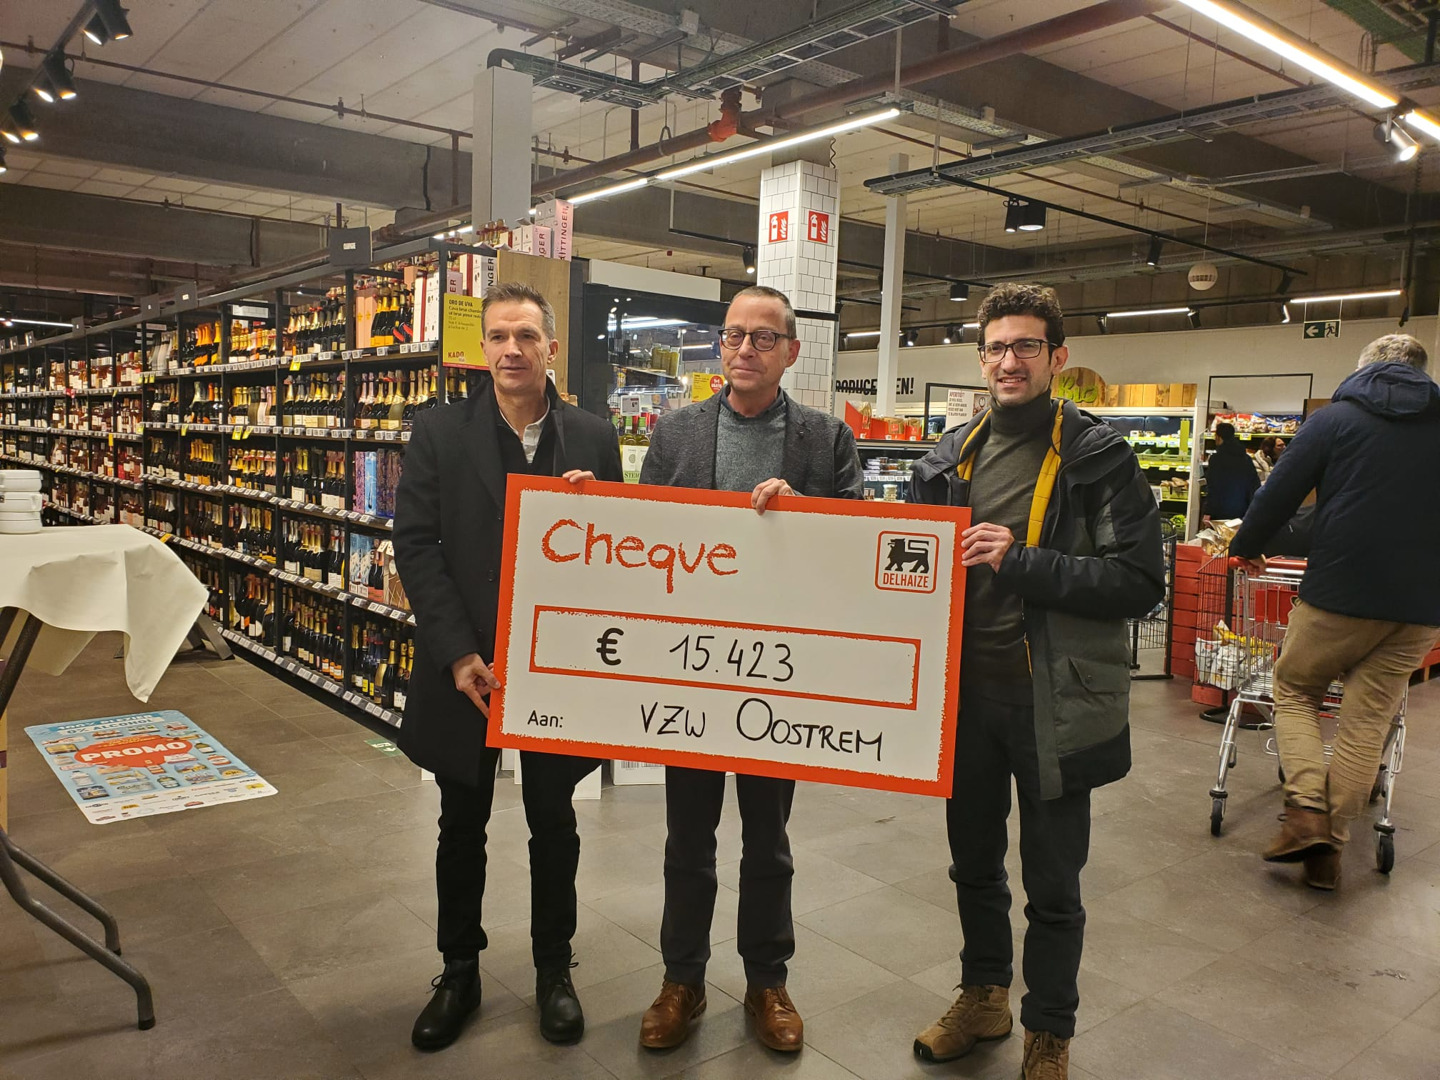 Verkoop Cuvée Oostrem door Delhaize levert 15.423 euro op voor vzw Oostrem in Herent